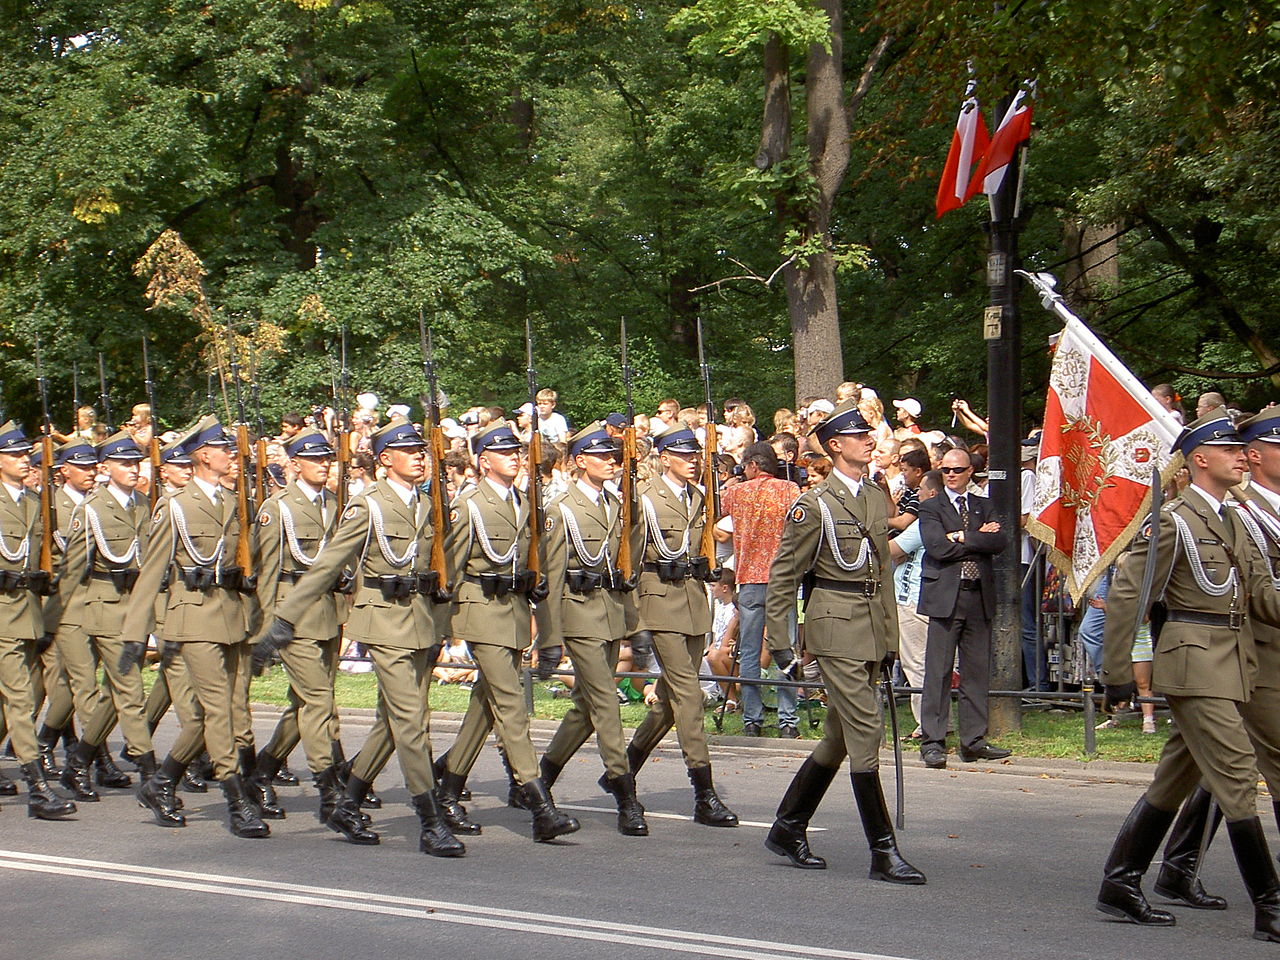 Batalion Reprezentacyjny Wojska Polskiego podczas obchodów Święta WP (15 sierpnia 2007). Fot. Raf24 / Wikipedia